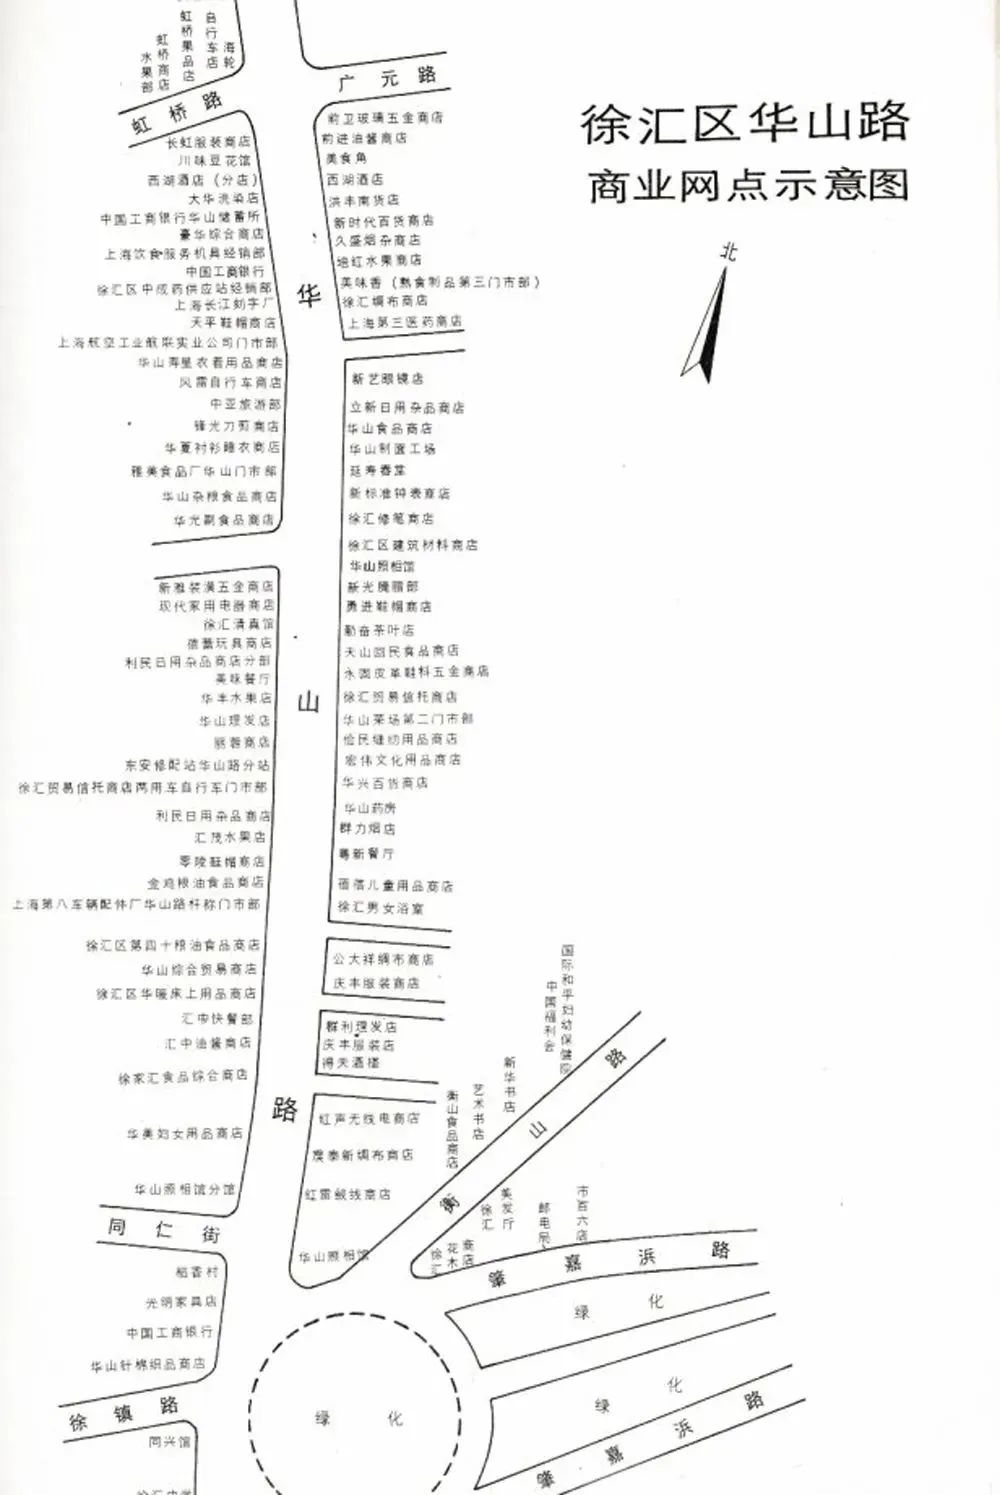 20世纪90年代初的徐家汇及华山路商业网点分布图